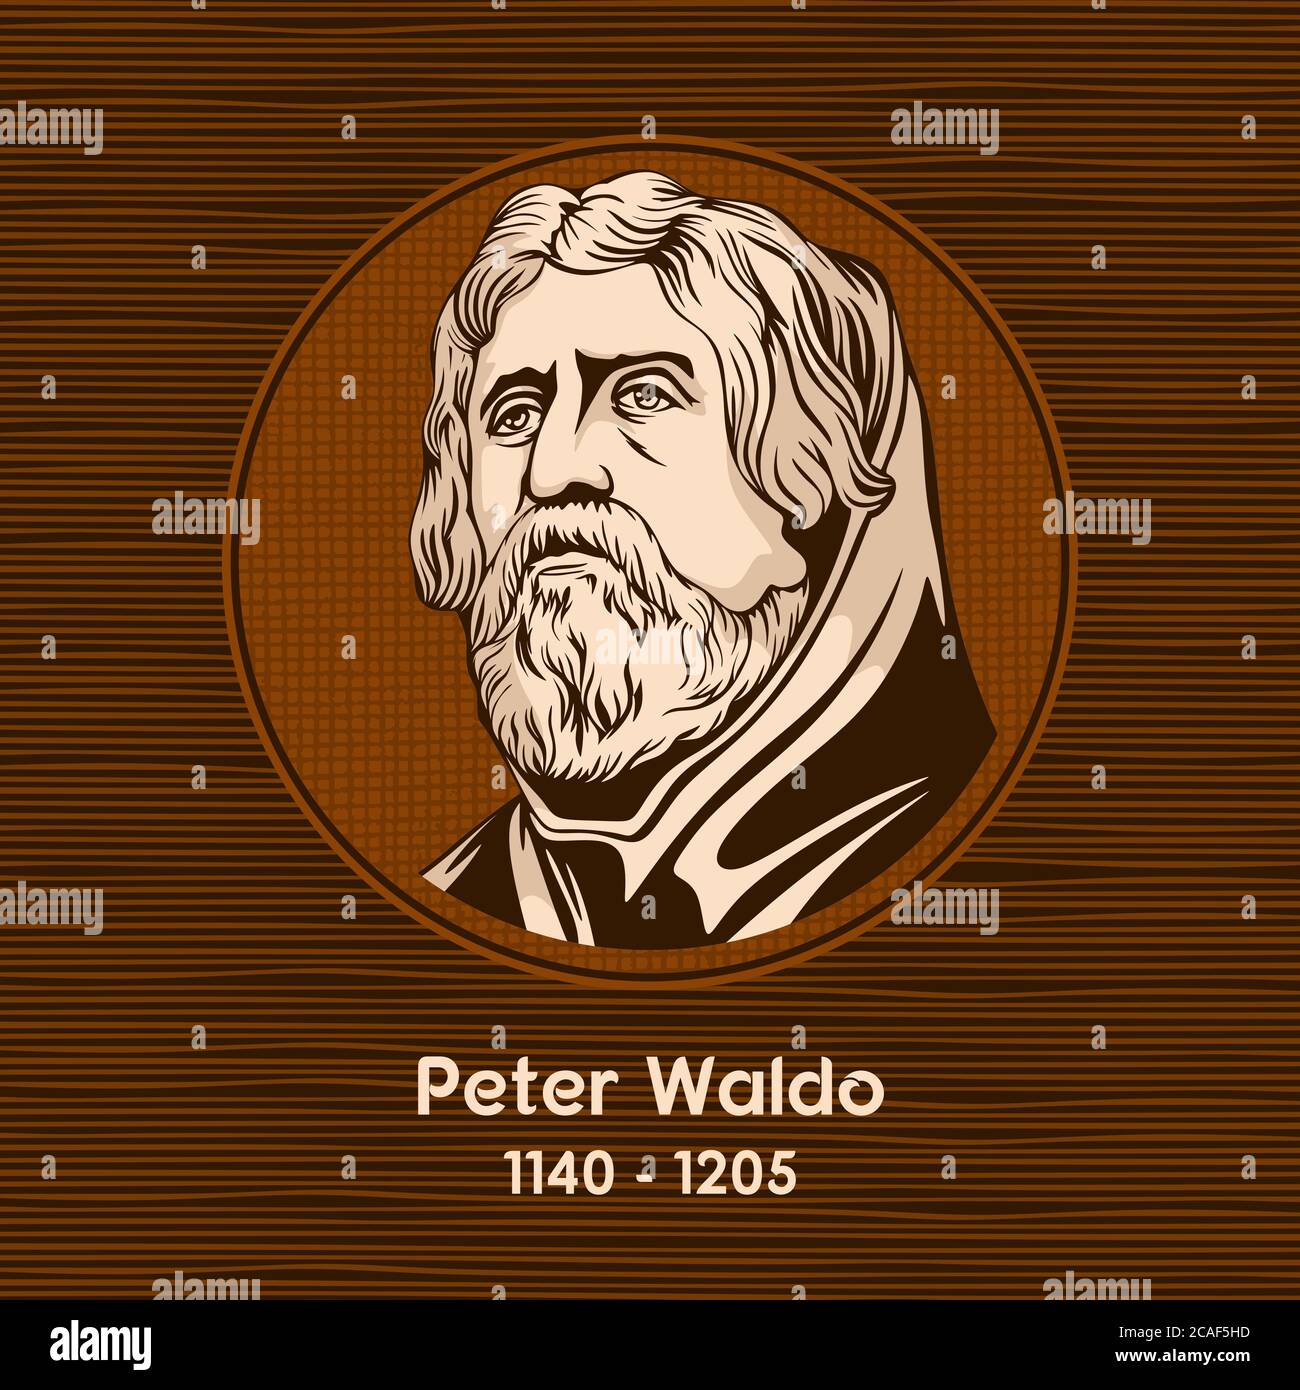 Peter Waldo (1140 - 1205), era un líder de los Waldenses, un movimiento espiritual cristiano de la Edad Media. Ilustración del Vector